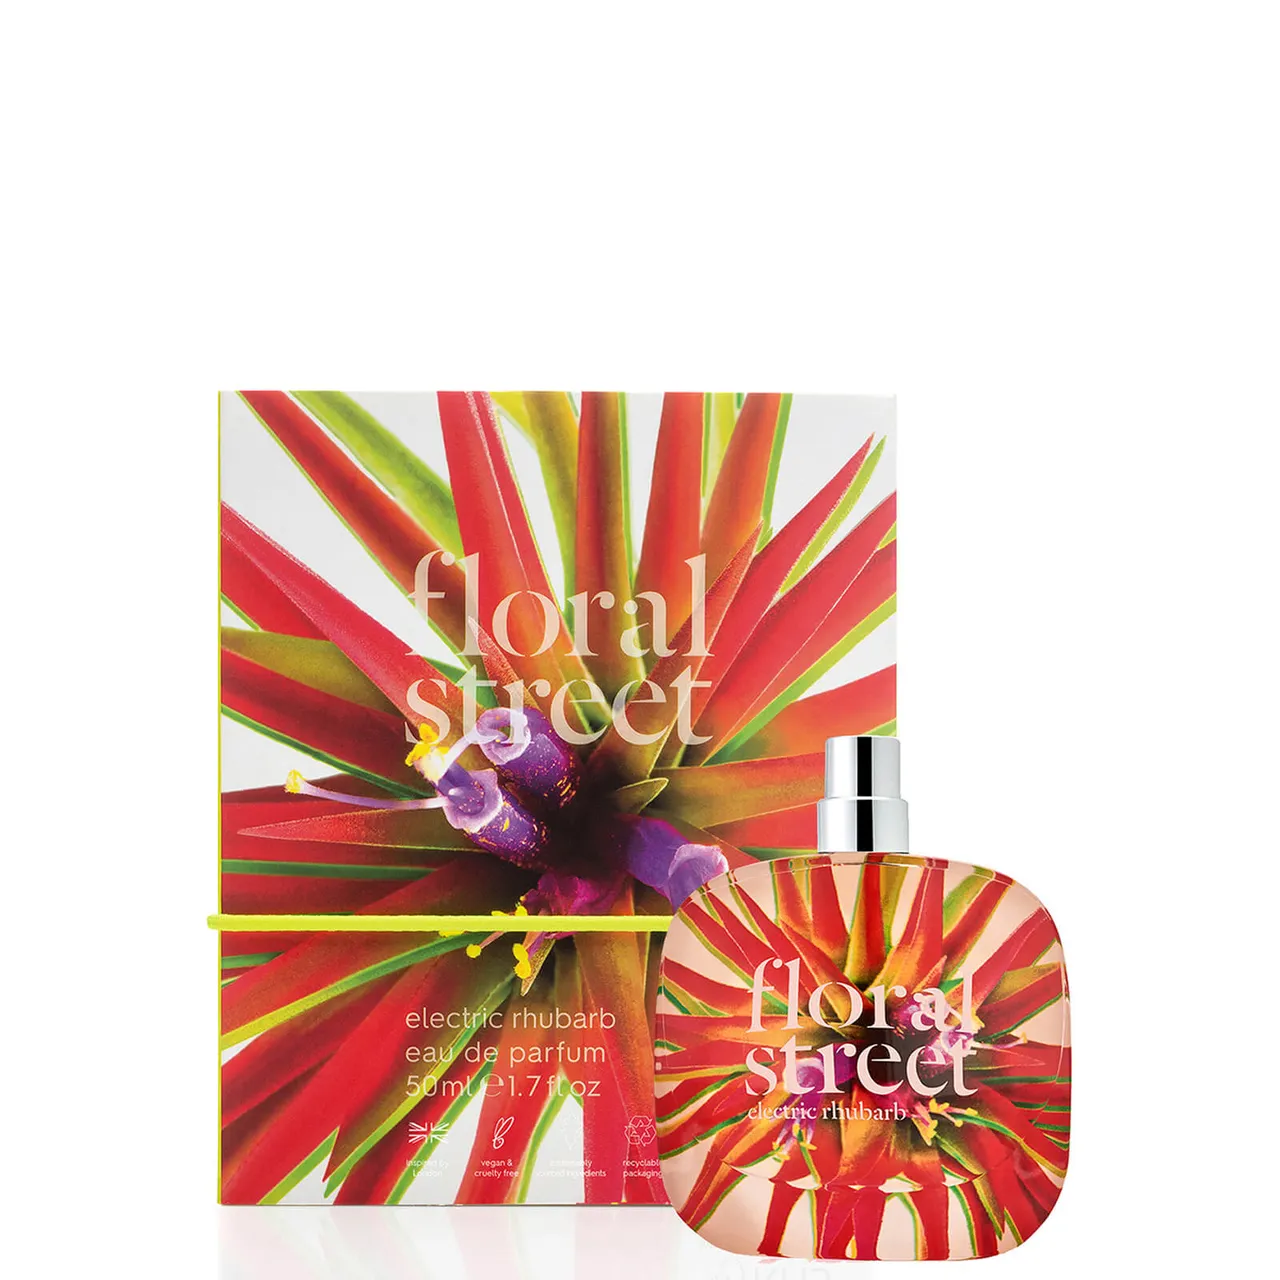 Floral Street Electric Rhubarb Eau de Parfum 50ml